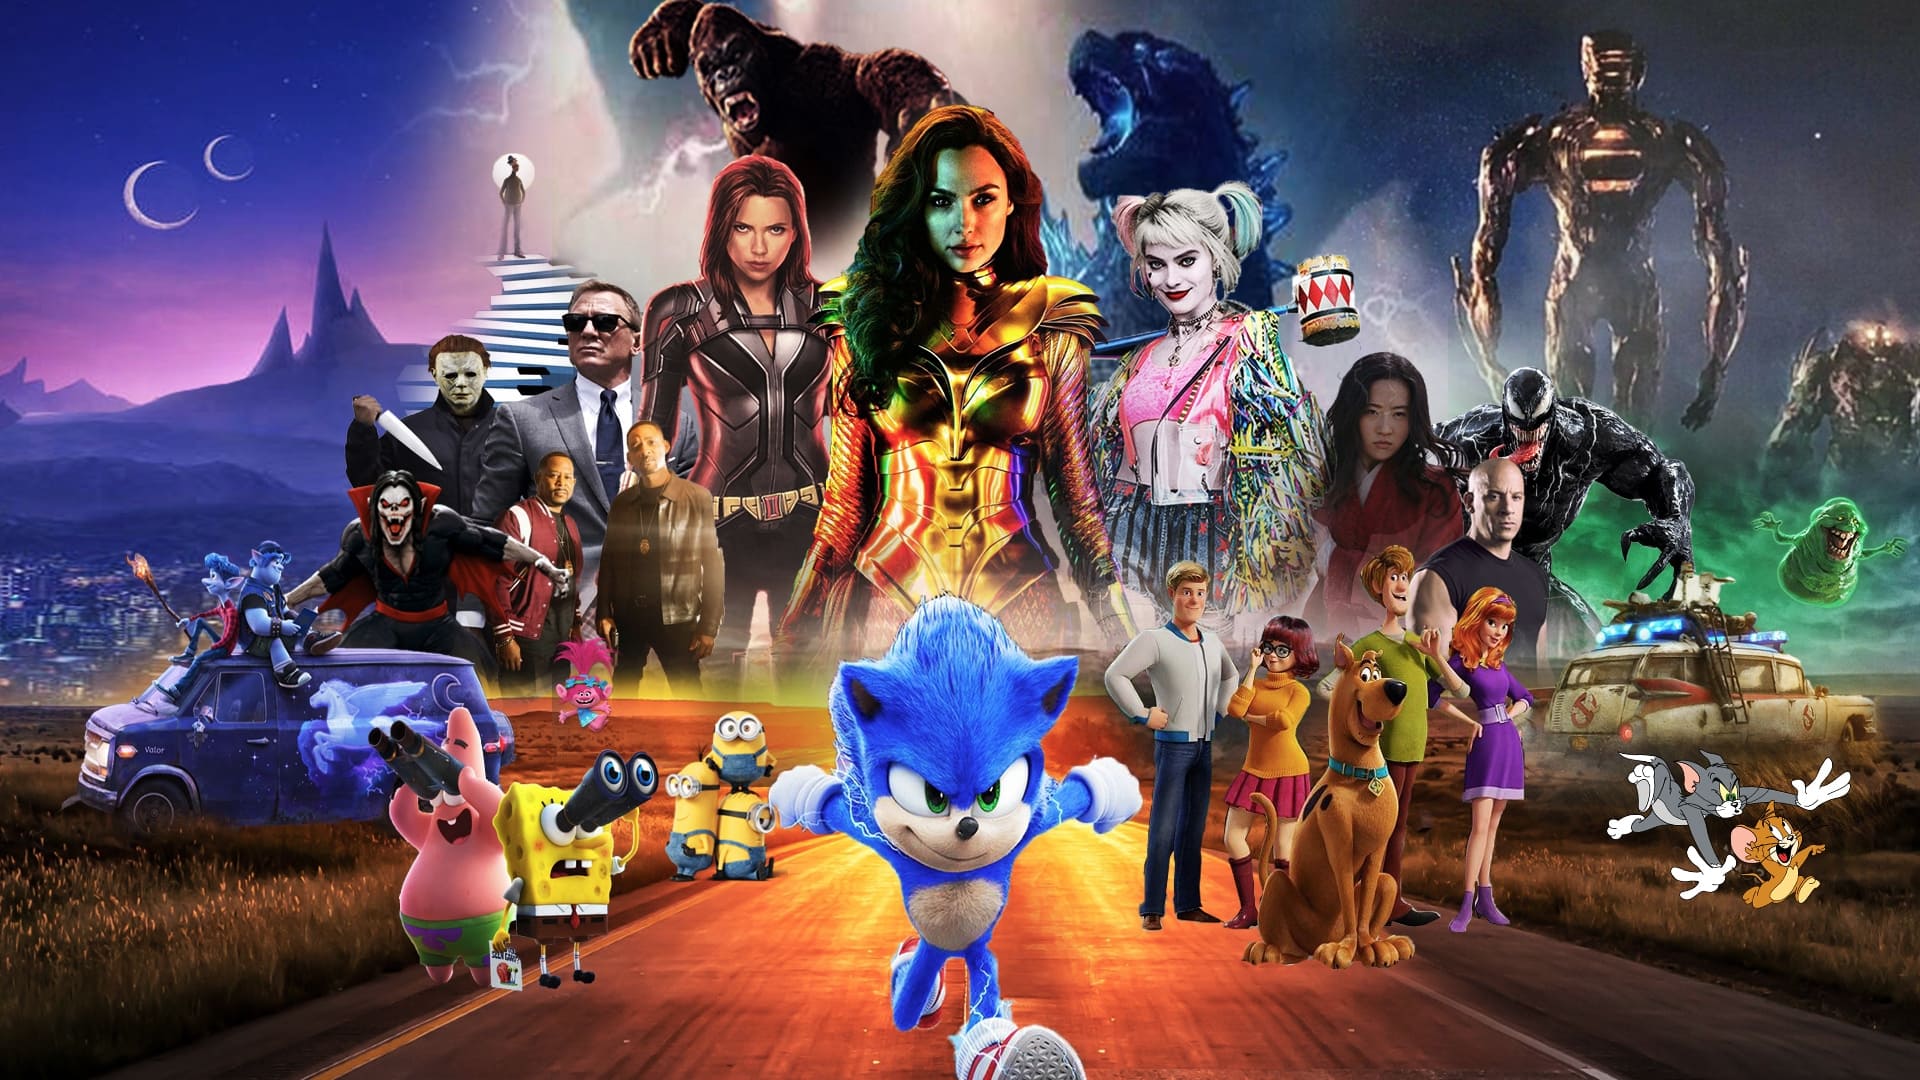 Sonic: Η Ταινία 2 (2022)